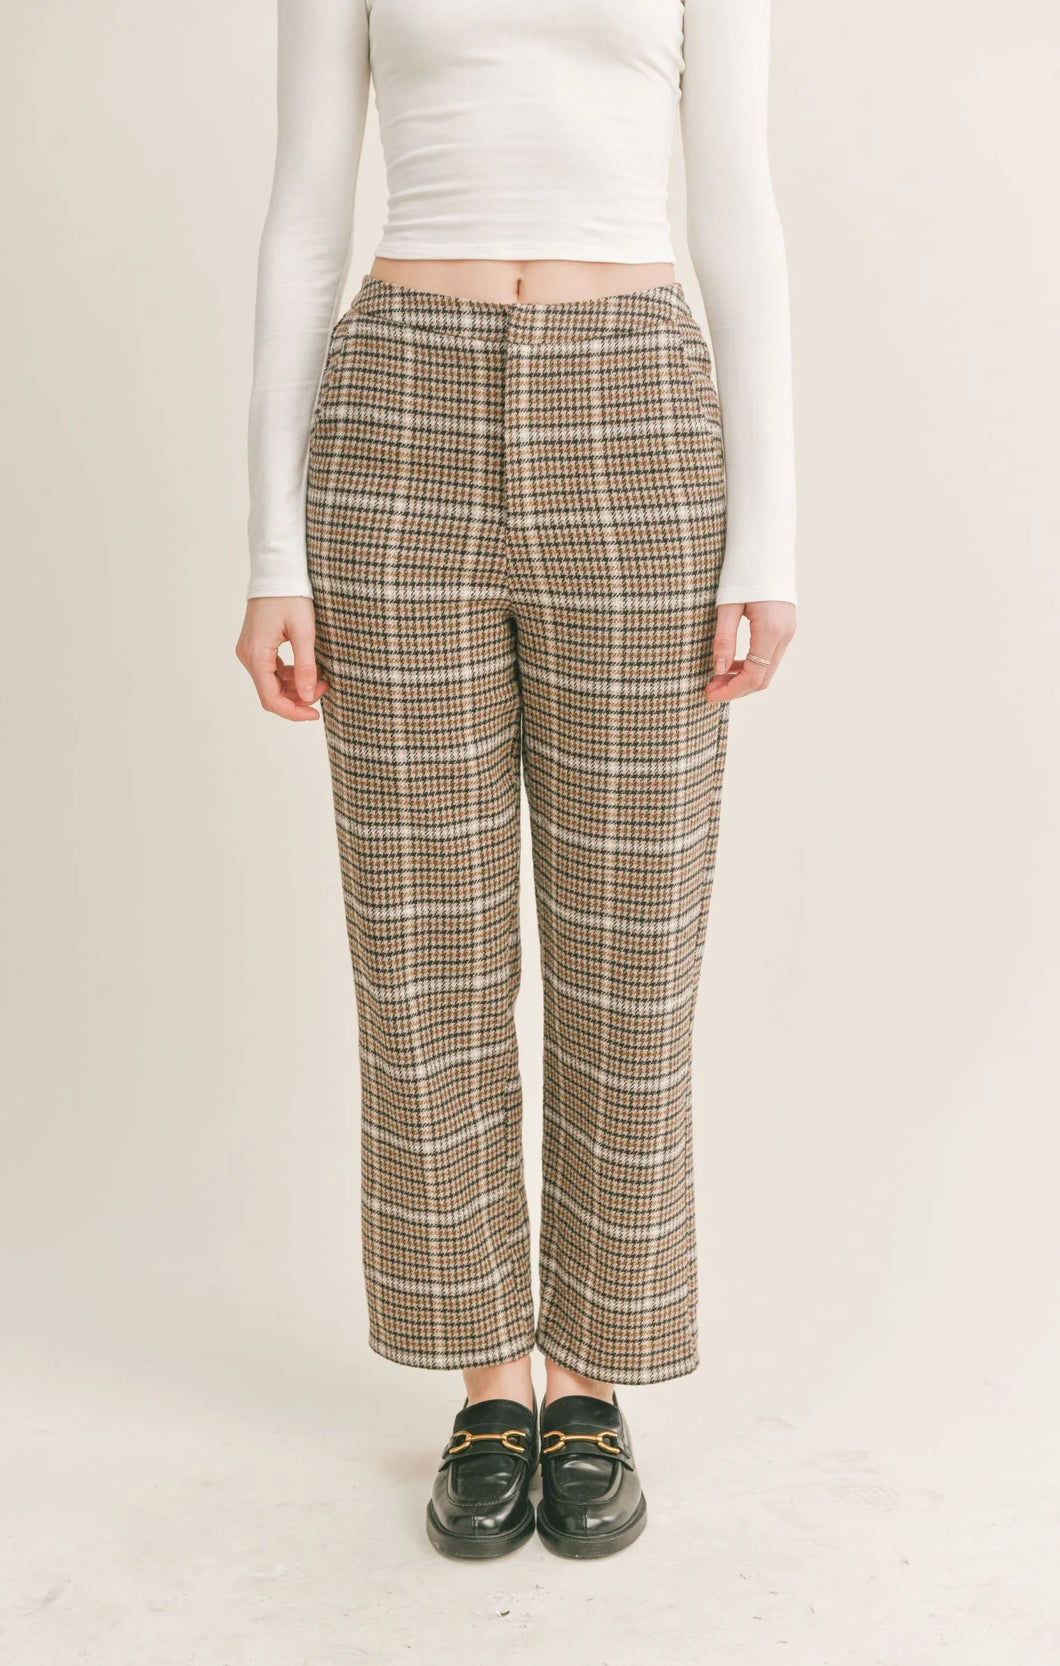 hot sale vintage plaid pants women| Alibaba.com